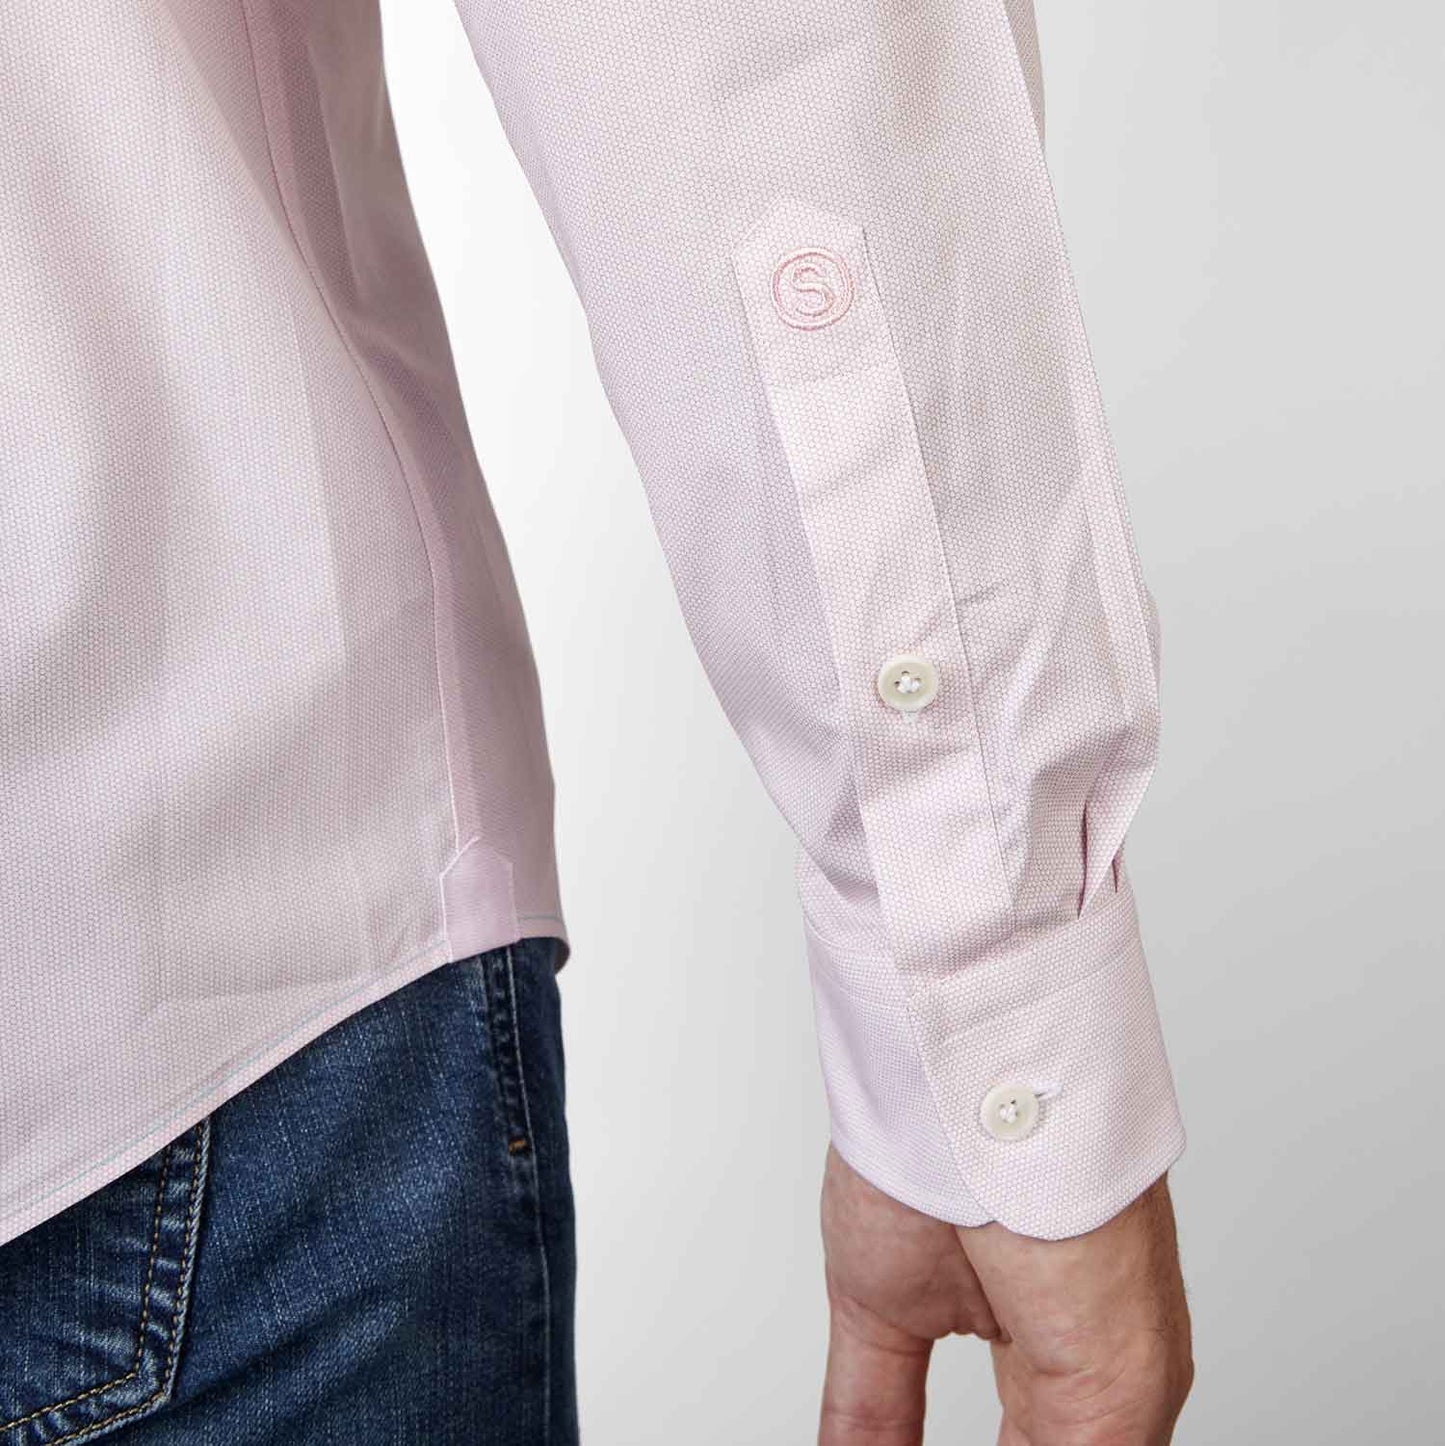 Overhemd - Slim Fit - Business Pink (laatste voorraad)